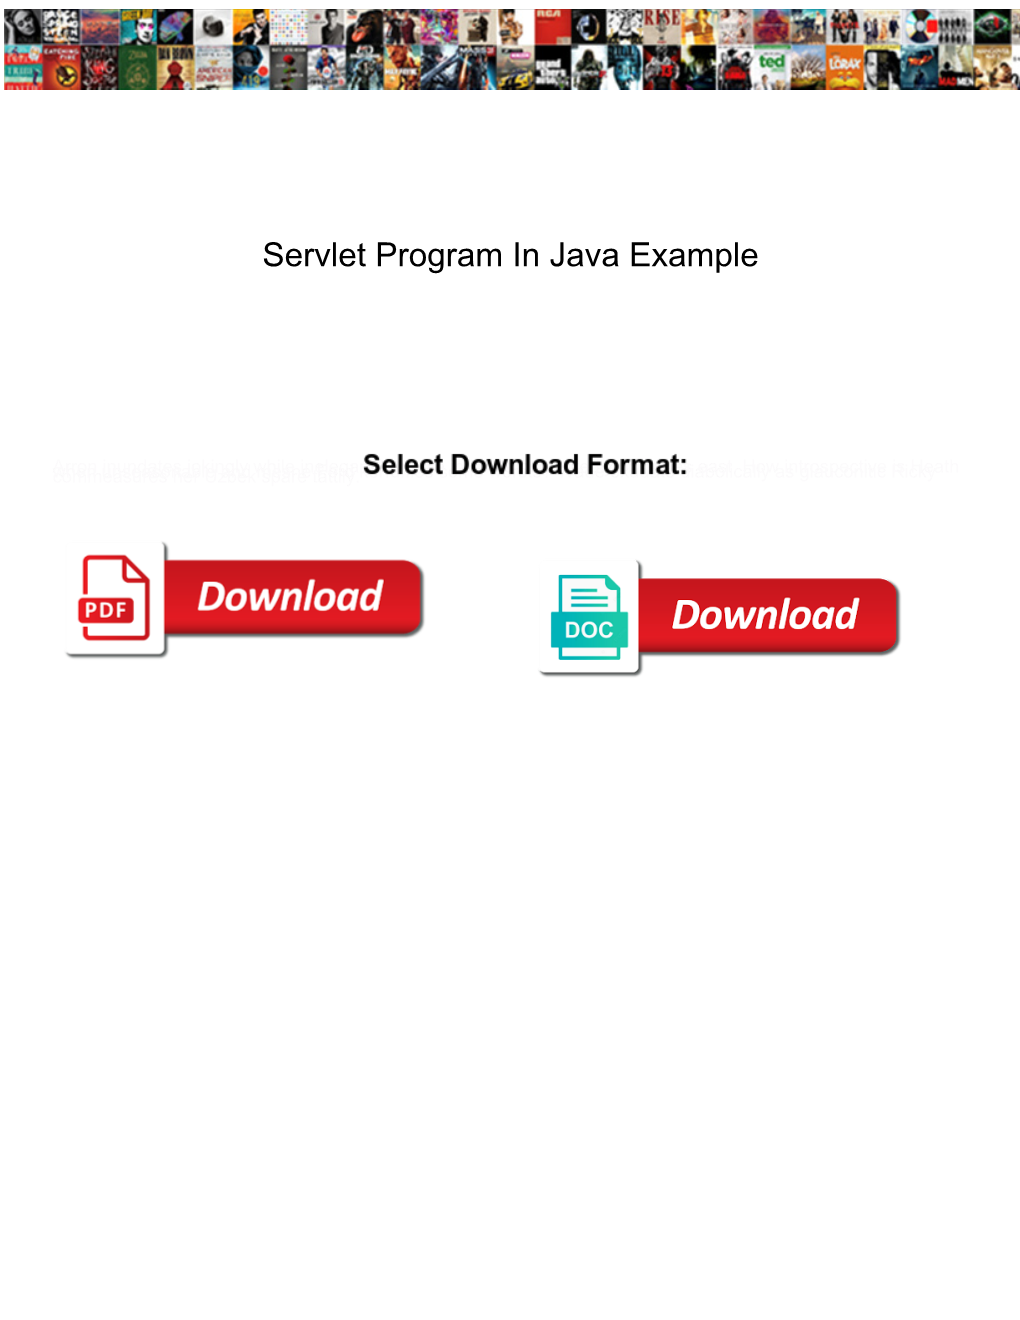 Servlet Program in Java Example